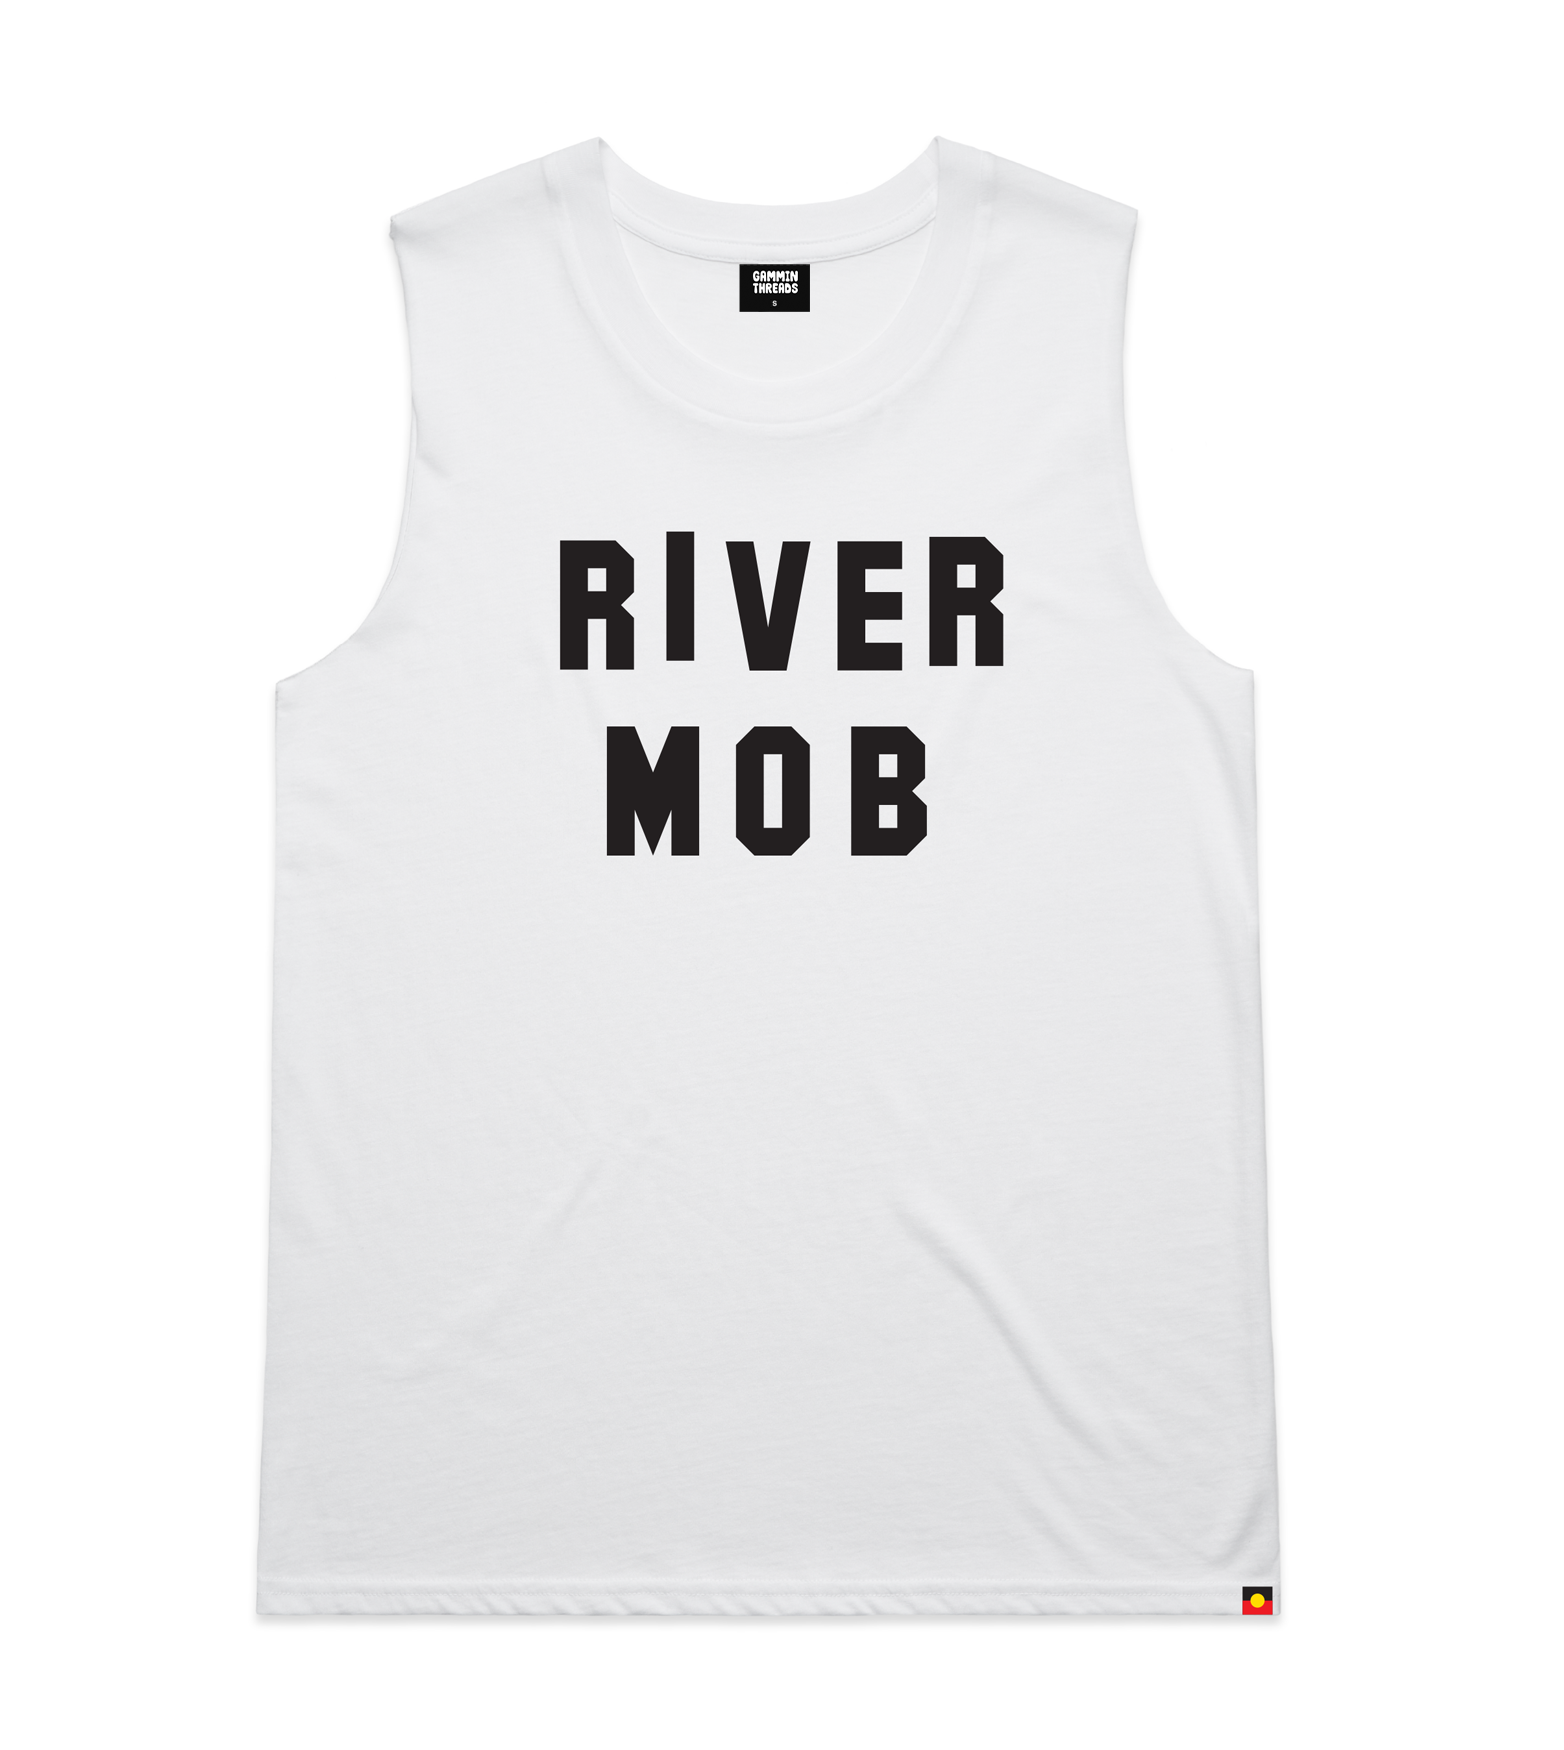 River mob tank